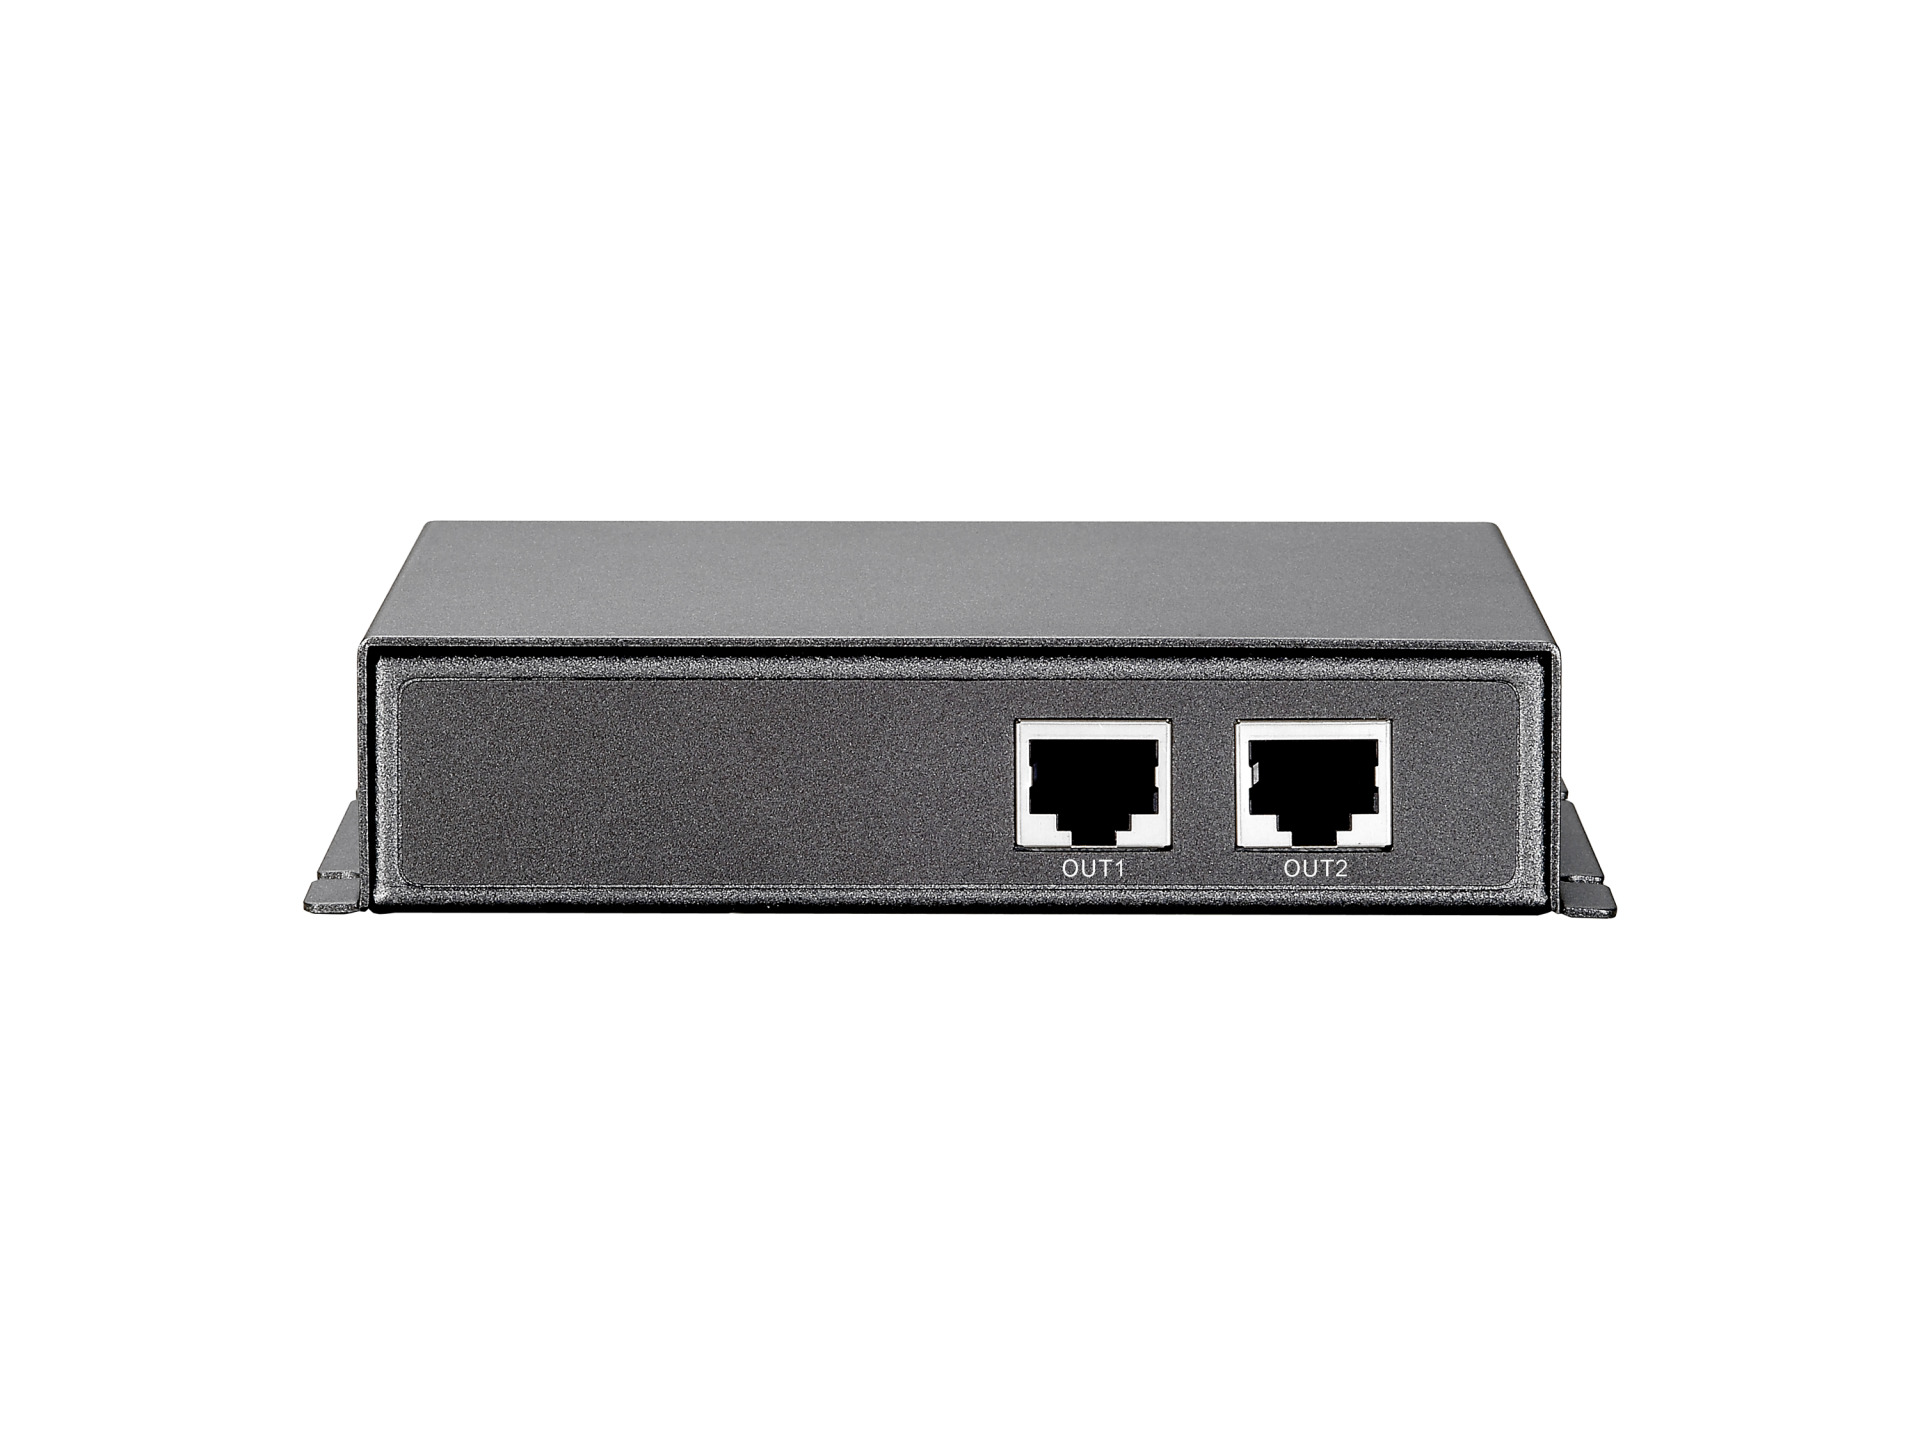 2-Port Gigabit Ethernet PoE-Repeater - 1 PoE Port, 1 non PoE Port